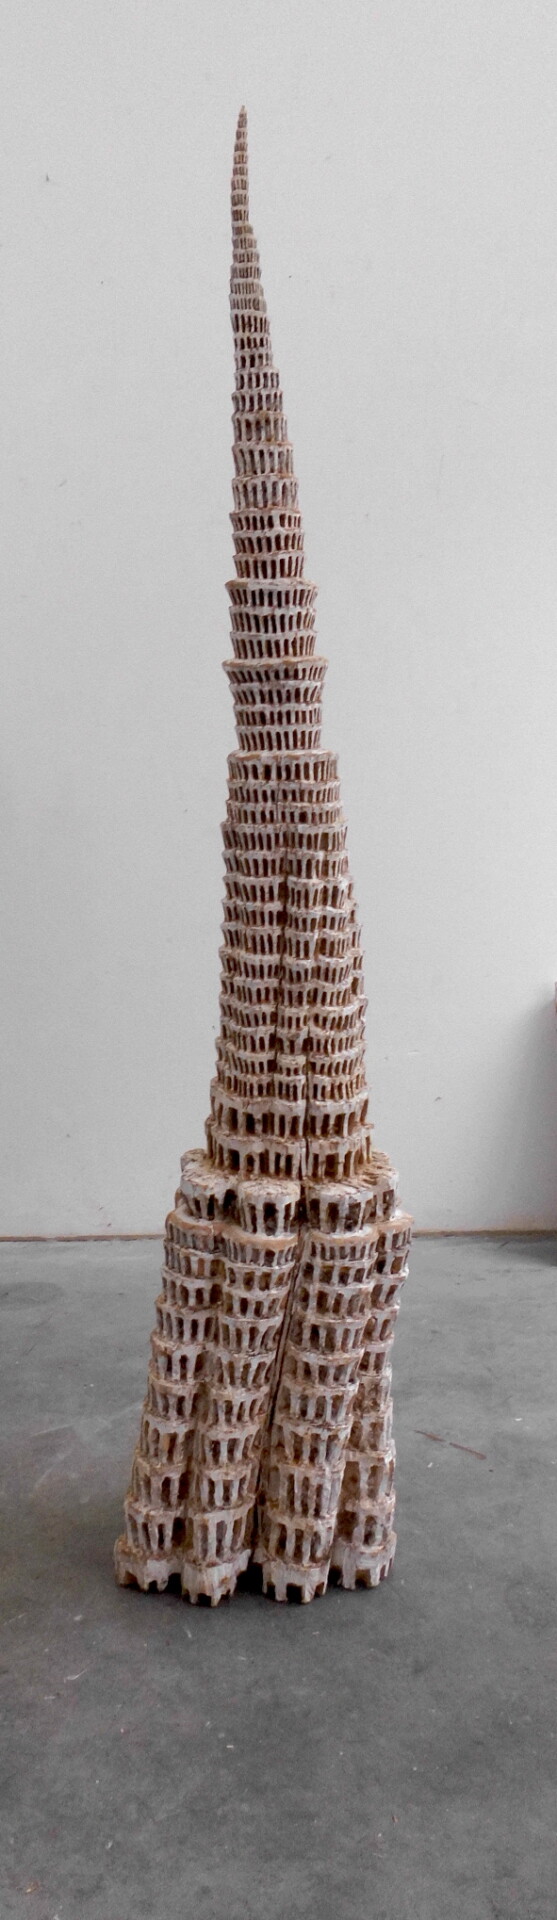 KLAUS HACK - Babel -Turm, 2015, Eiche weiß gefasst, 194,5 x42 x33 cm